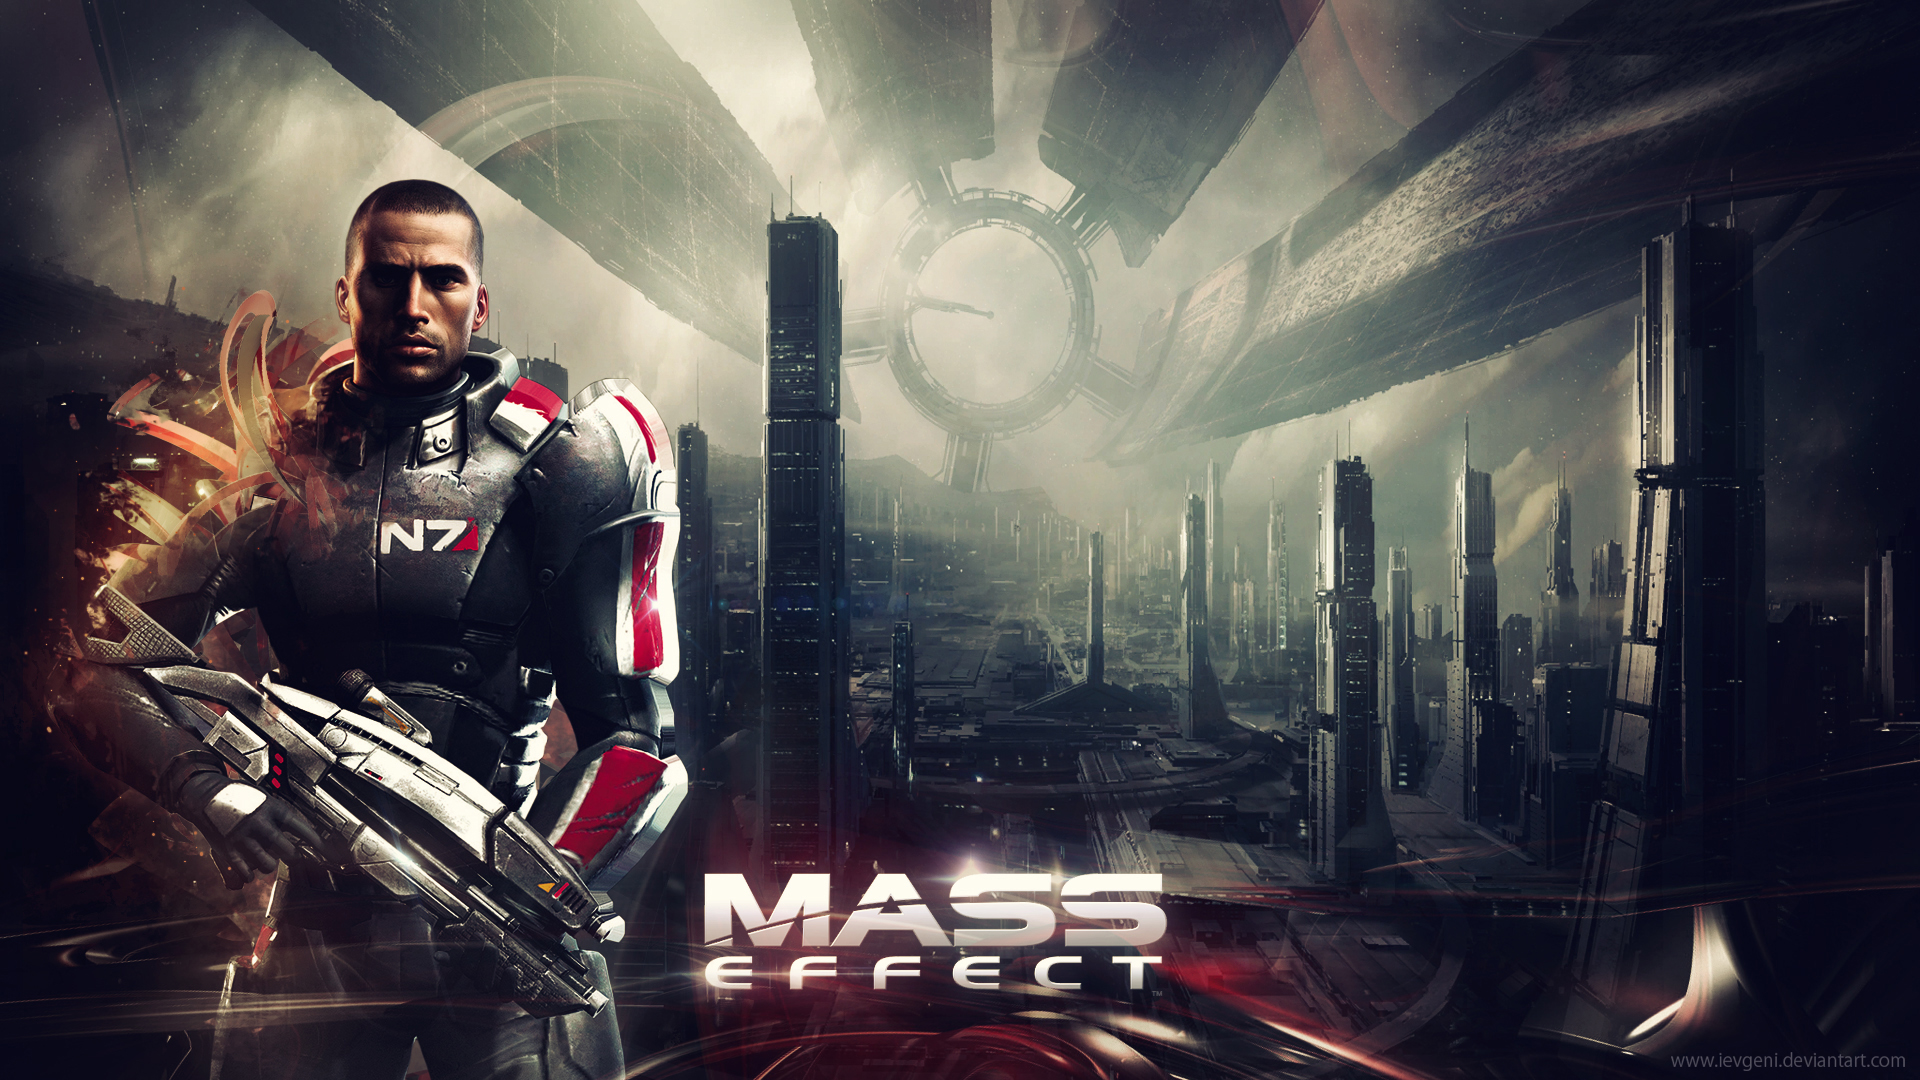 citadel (mass effect), video game, mass effect, commander shepard